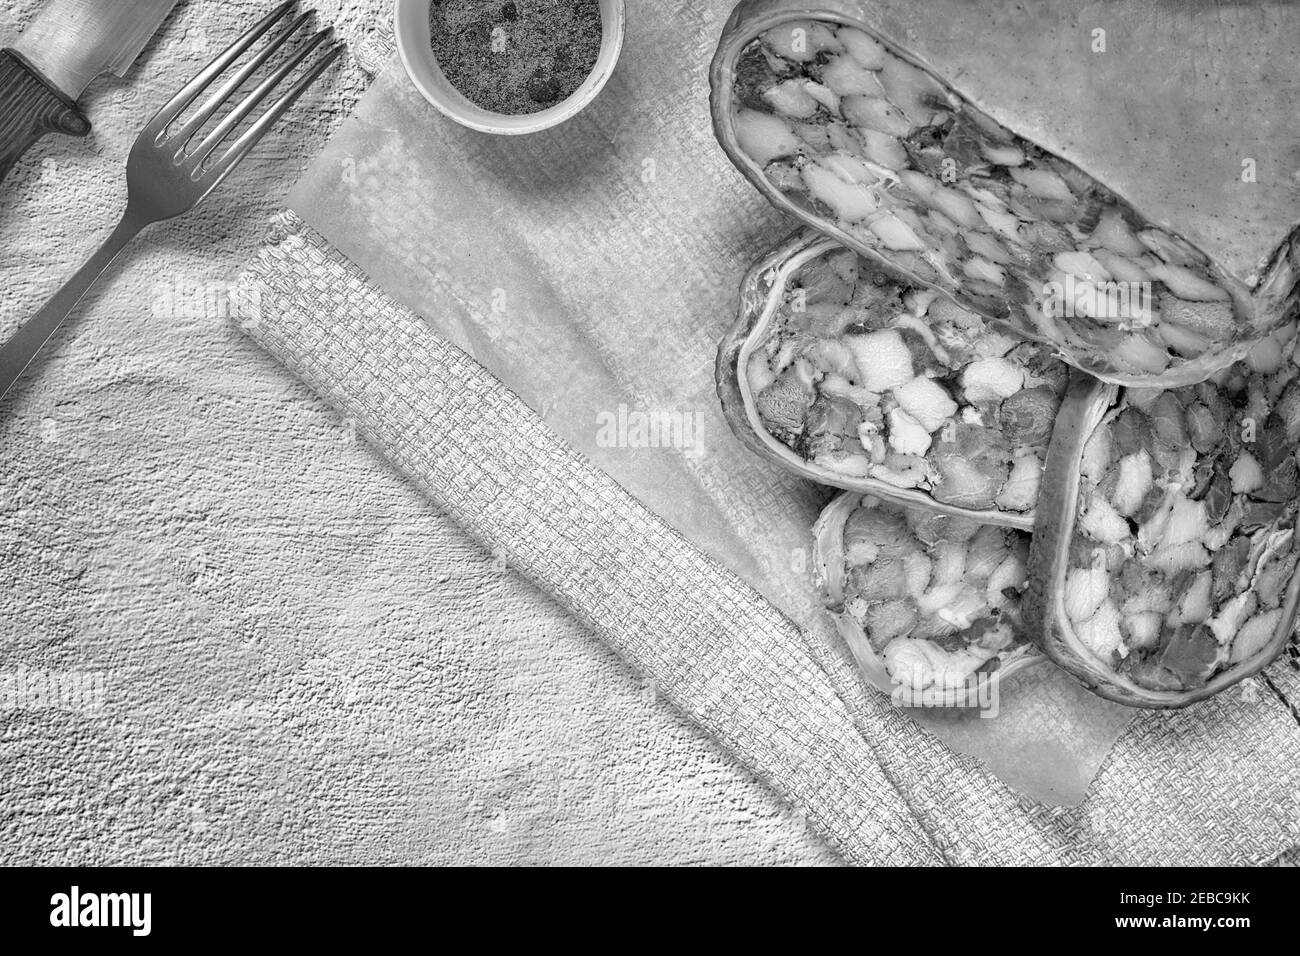 Sur la table, sur une assiette de délicieux hors-d'œuvre de viande : farci de viande et bacon estomac de porc, tranché, à côté de légumes et concombres frais. Top vie Banque D'Images